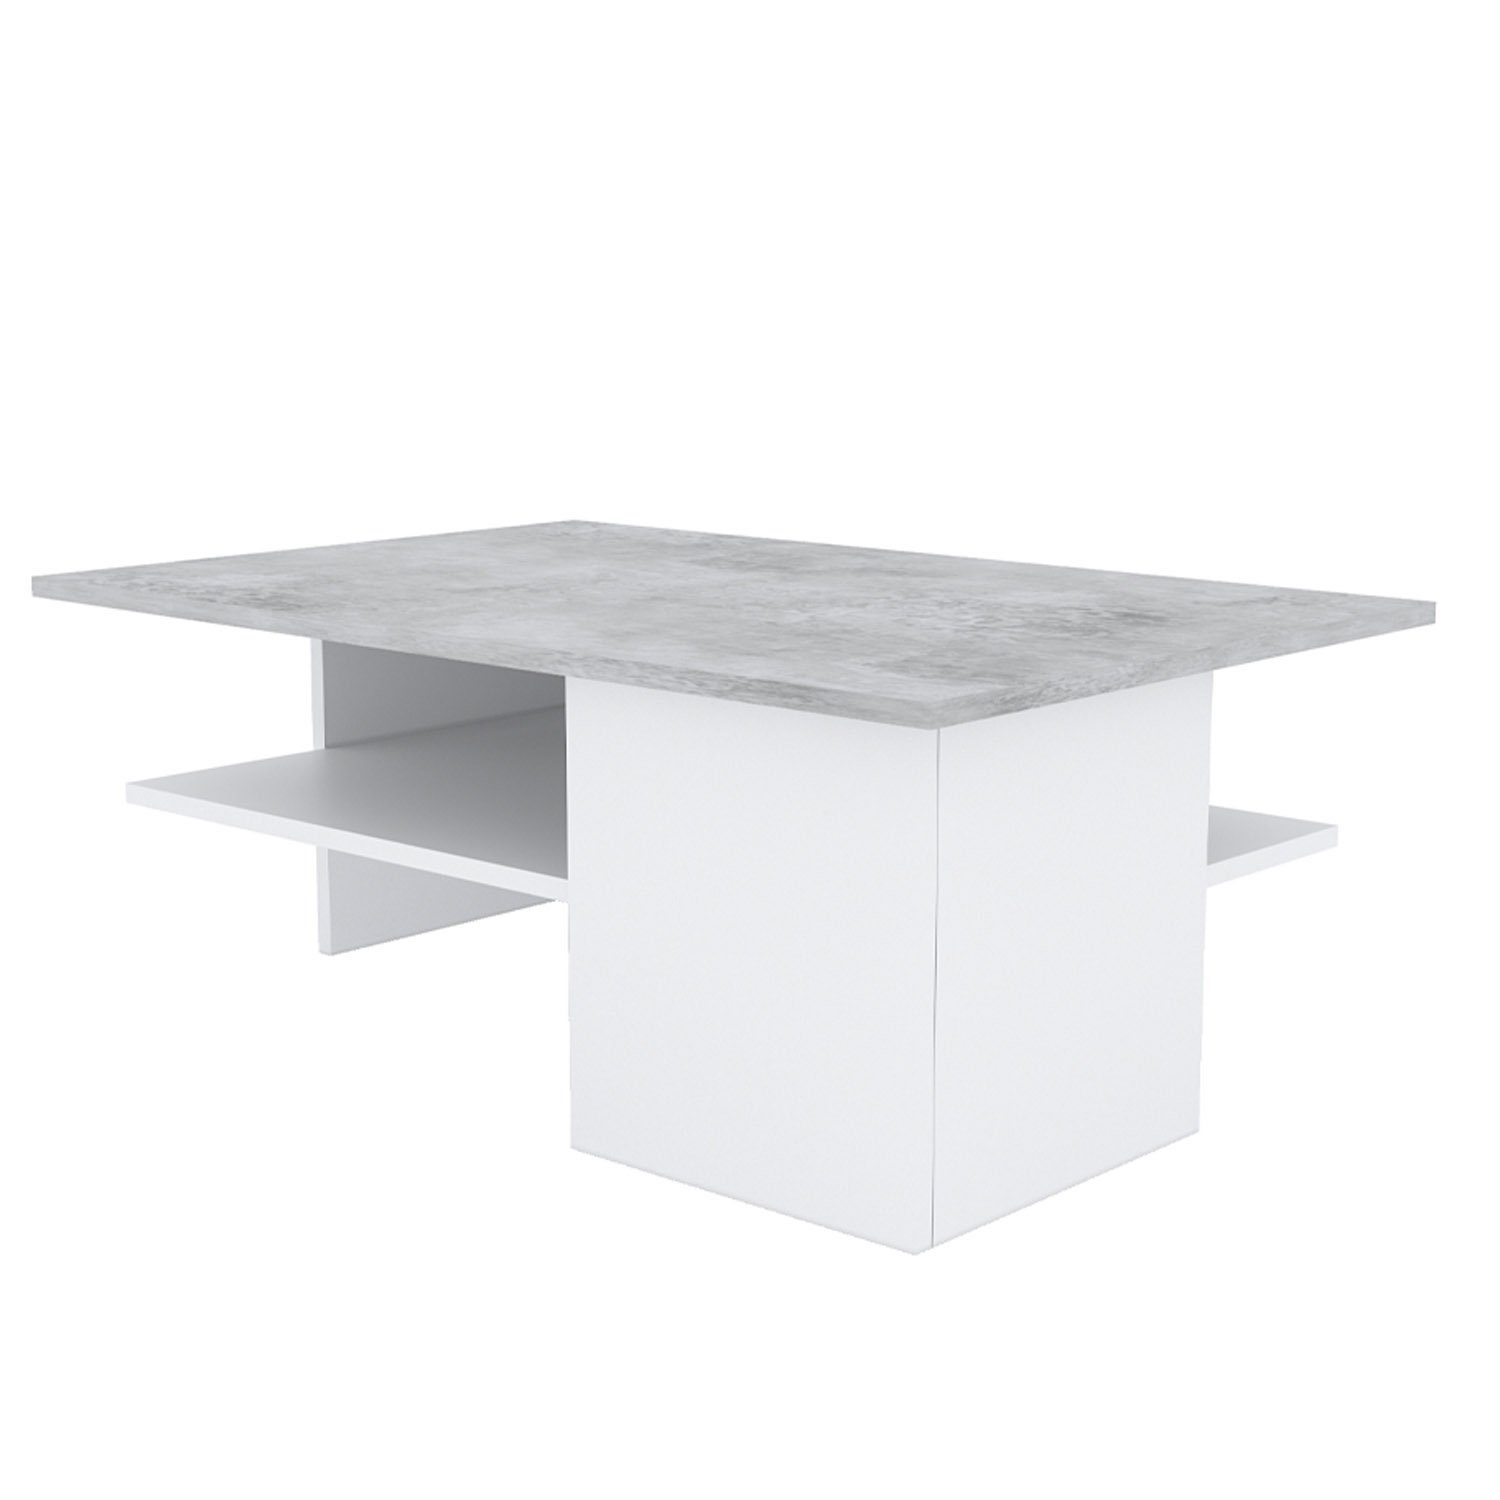 Homestyle4u Couchtisch Wohnzimmertisch Sofatisch Holz Natur Beton Tisch (kein Set) grau